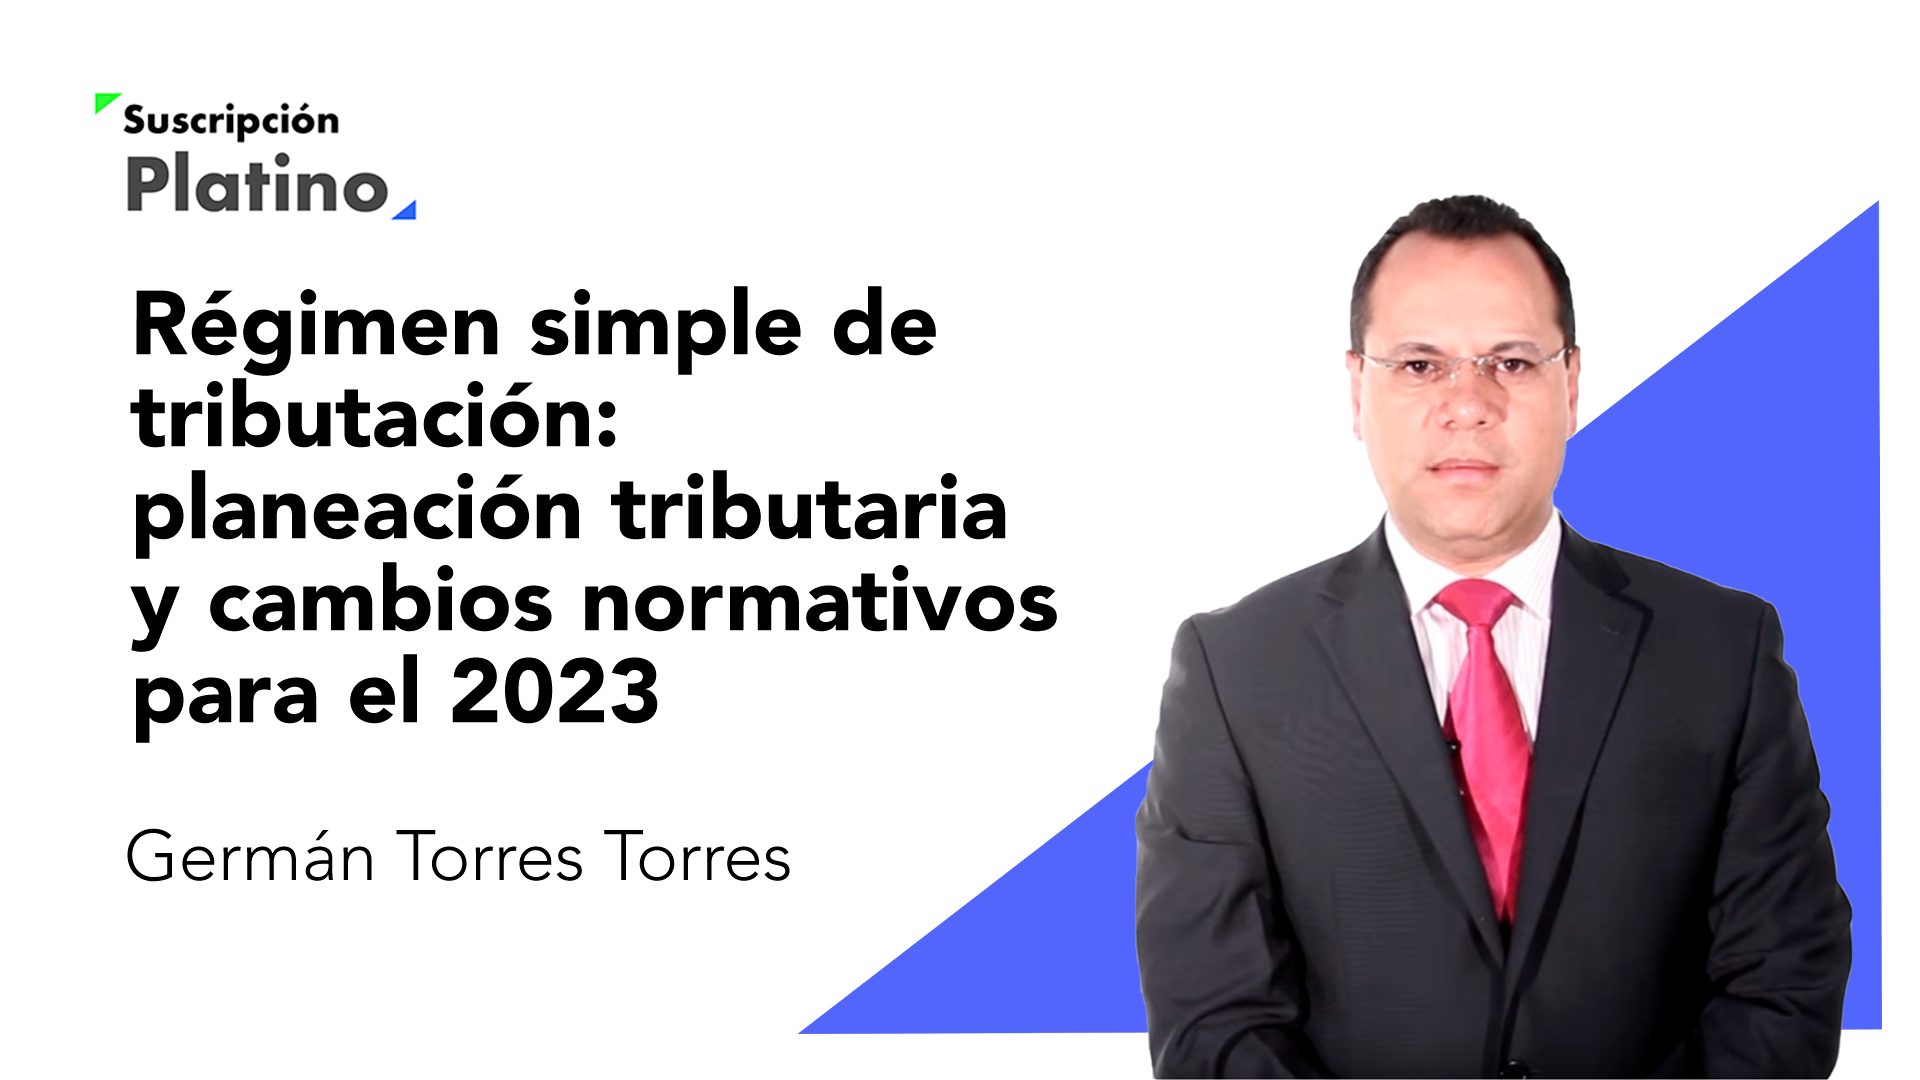 Régimen simple de tributación: planeación tributaria y cambios normativos para el 2023